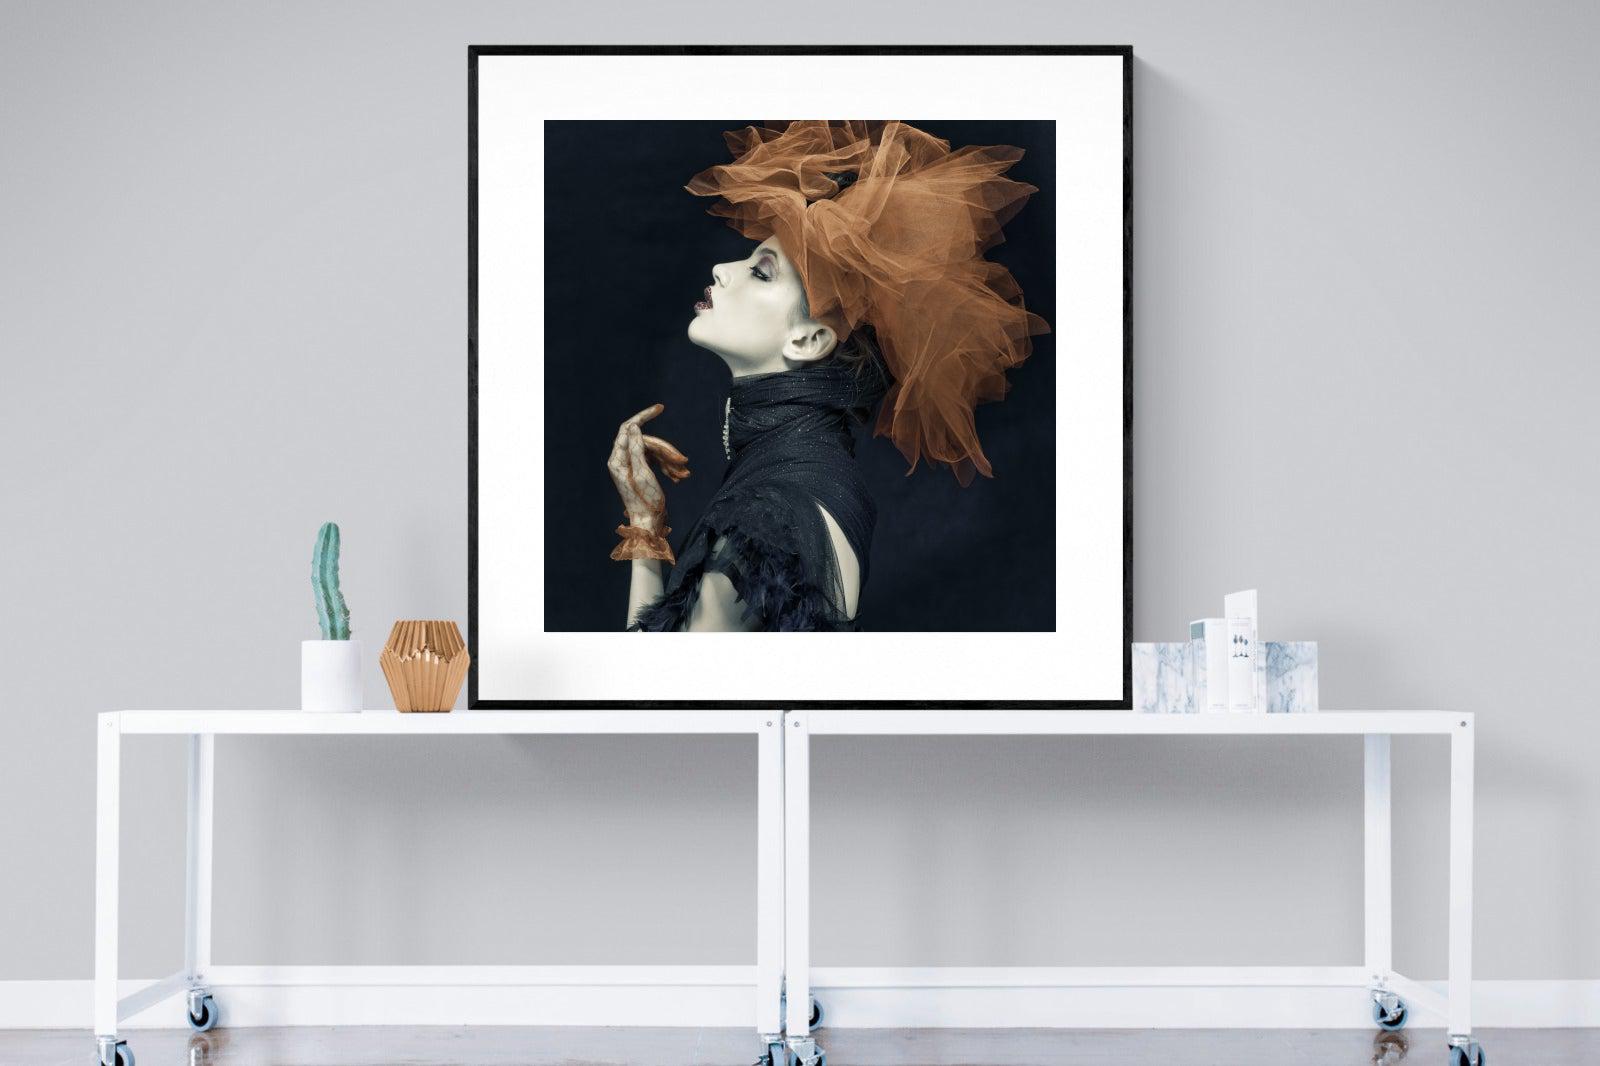 Imperious-Wall_Art-120 x 120cm-Framed Print-Black-Pixalot